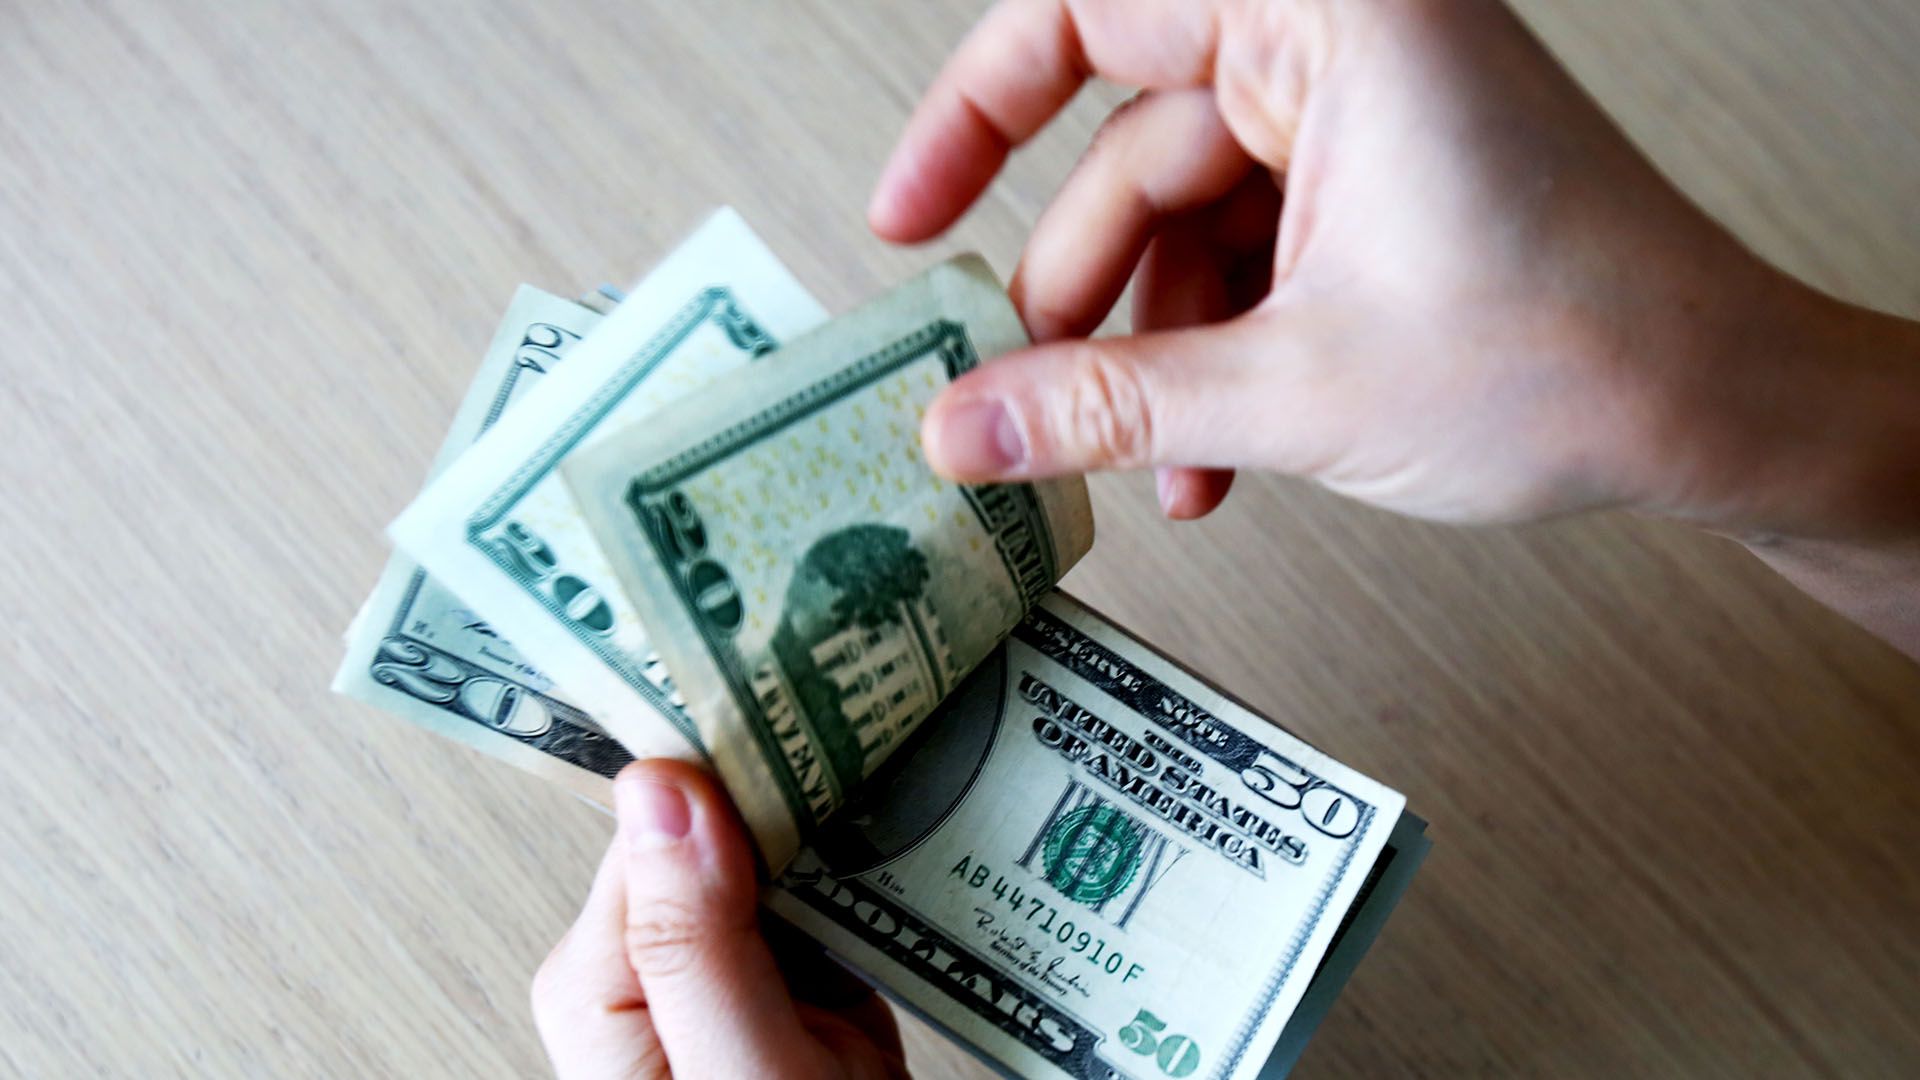 Avance del dólar el día después de las nuevas medidas de control (Shutterstock)